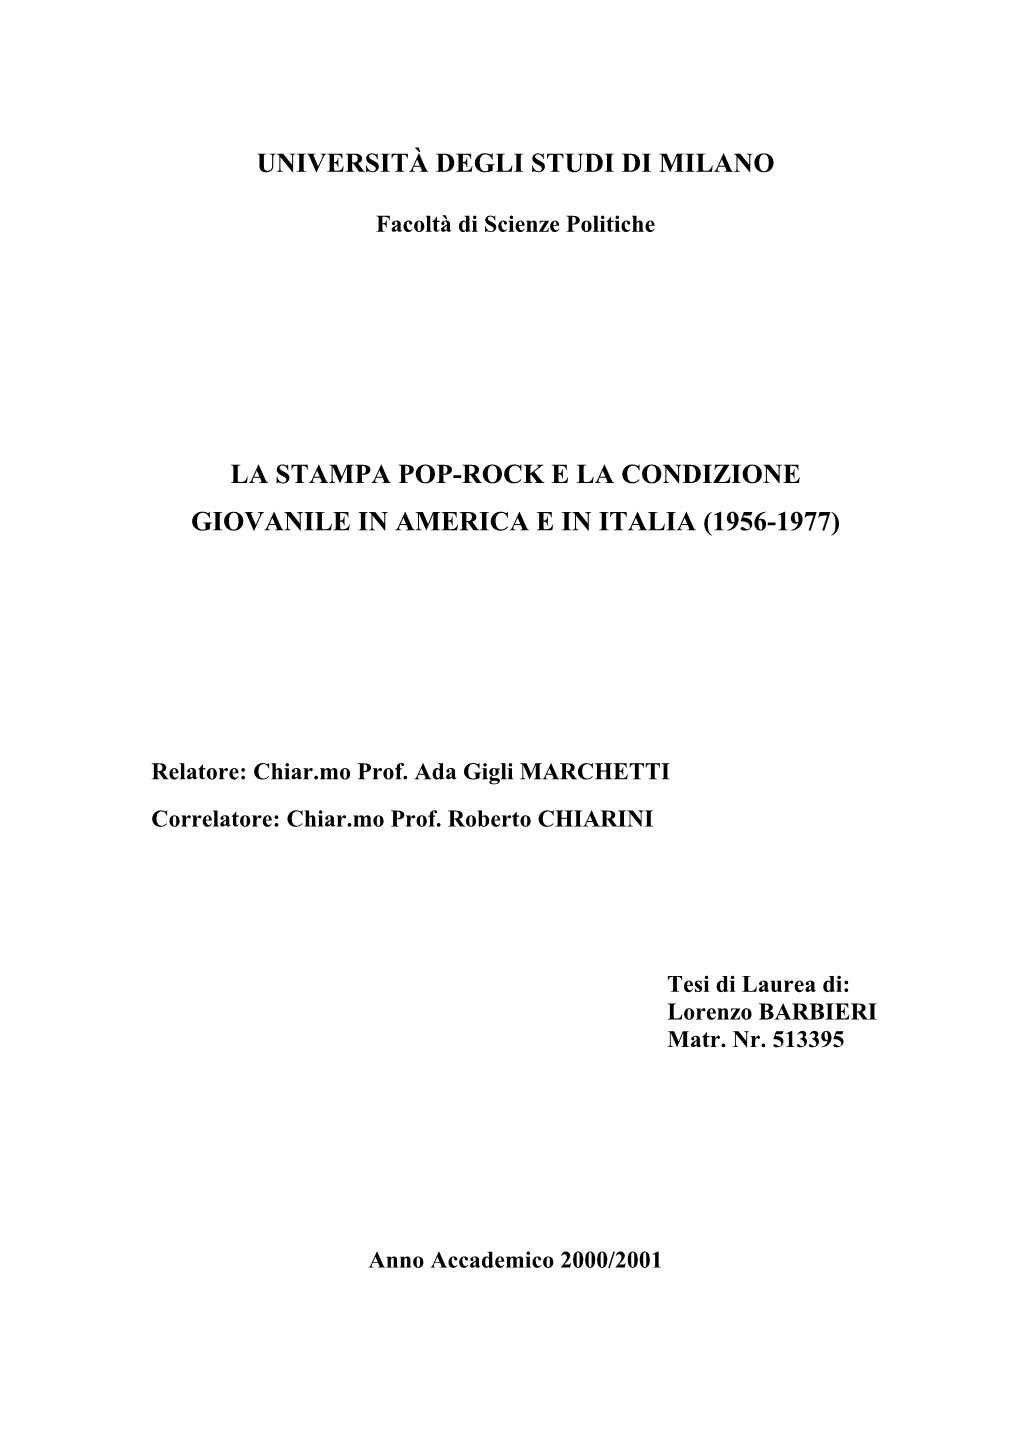 La Stampa Pop-Rock E La Condizione Giovanile in America E in Italia (1956-1977)